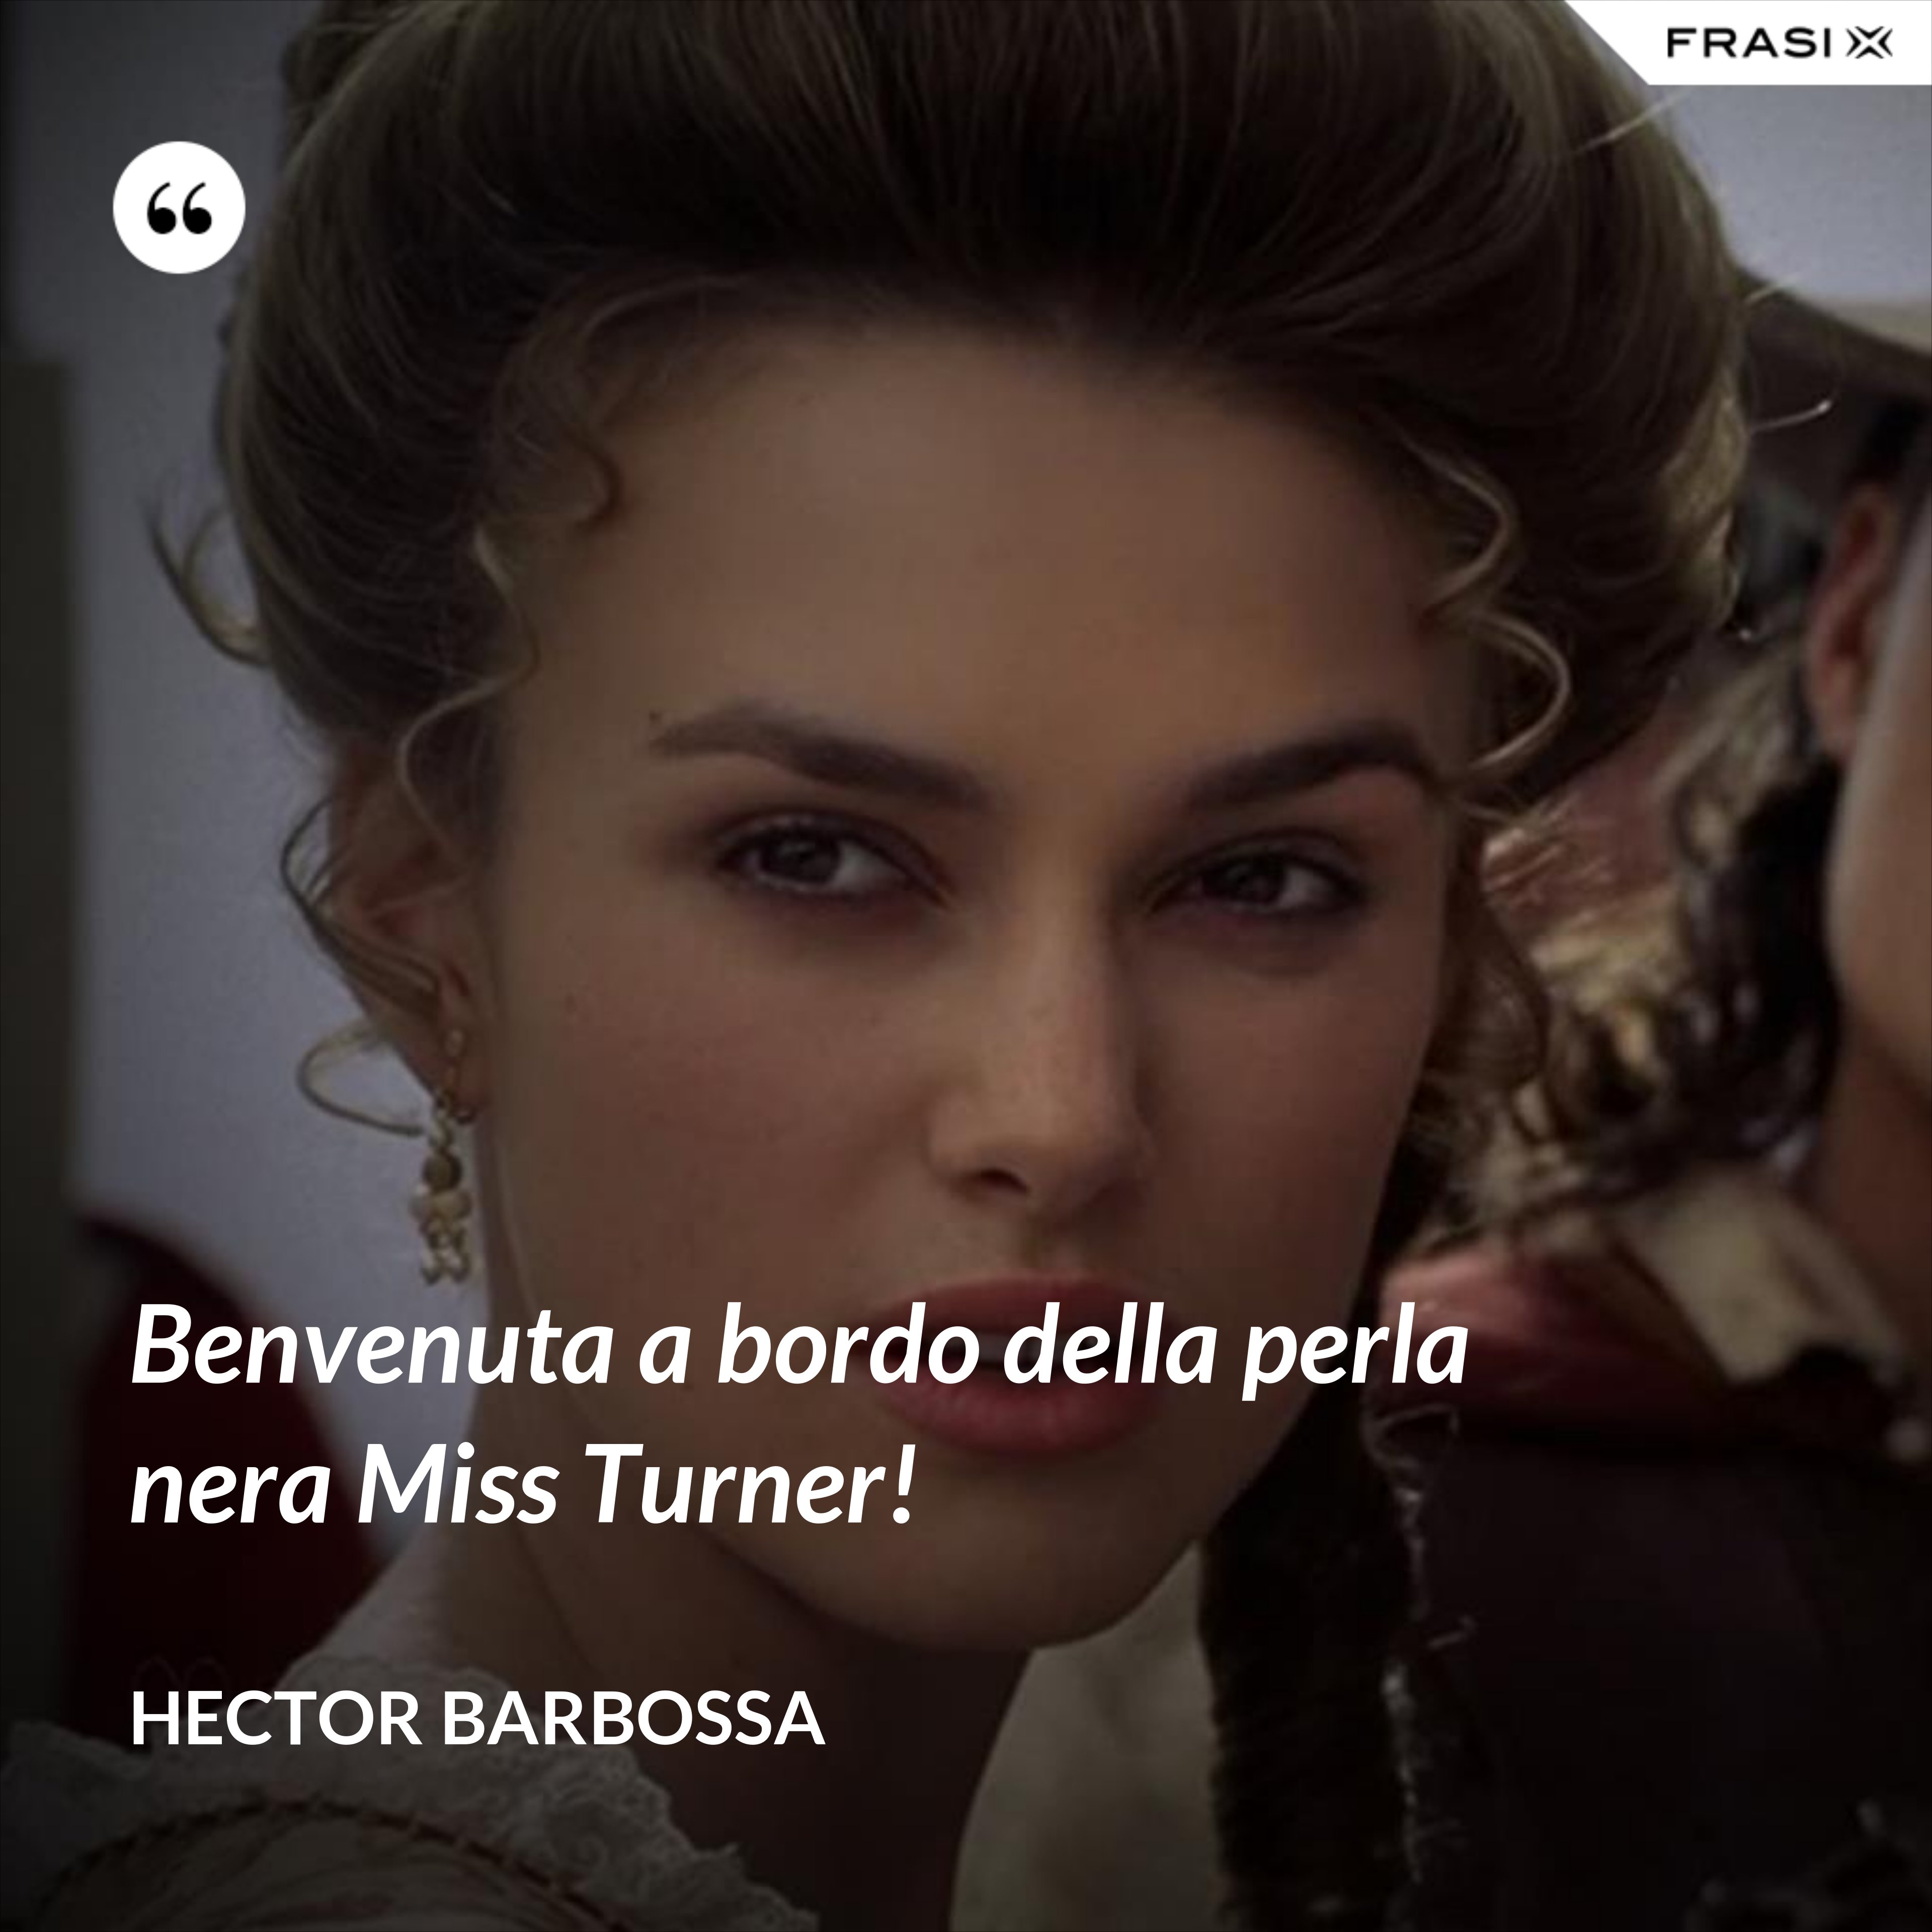 Benvenuta a bordo della perla nera Miss Turner! - Hector Barbossa